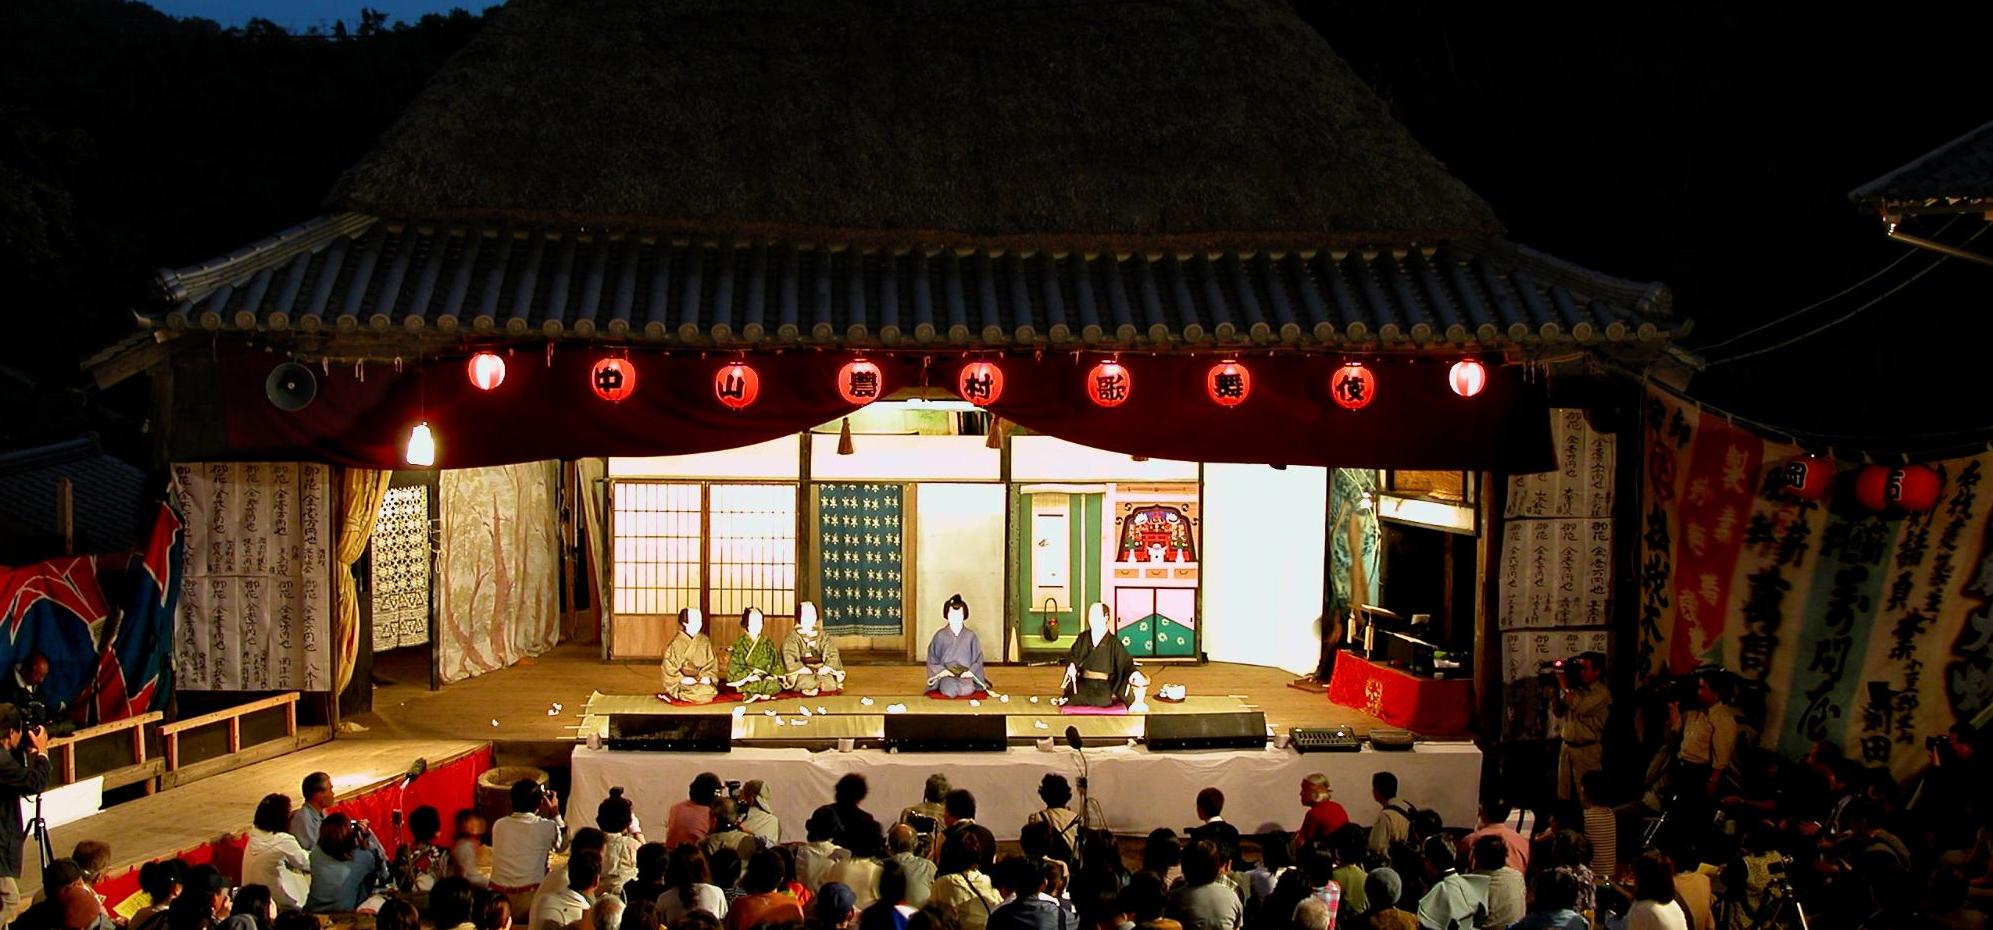 薄暗い夕暮れ時に大勢の観客の前で中山歌舞伎が上演されている